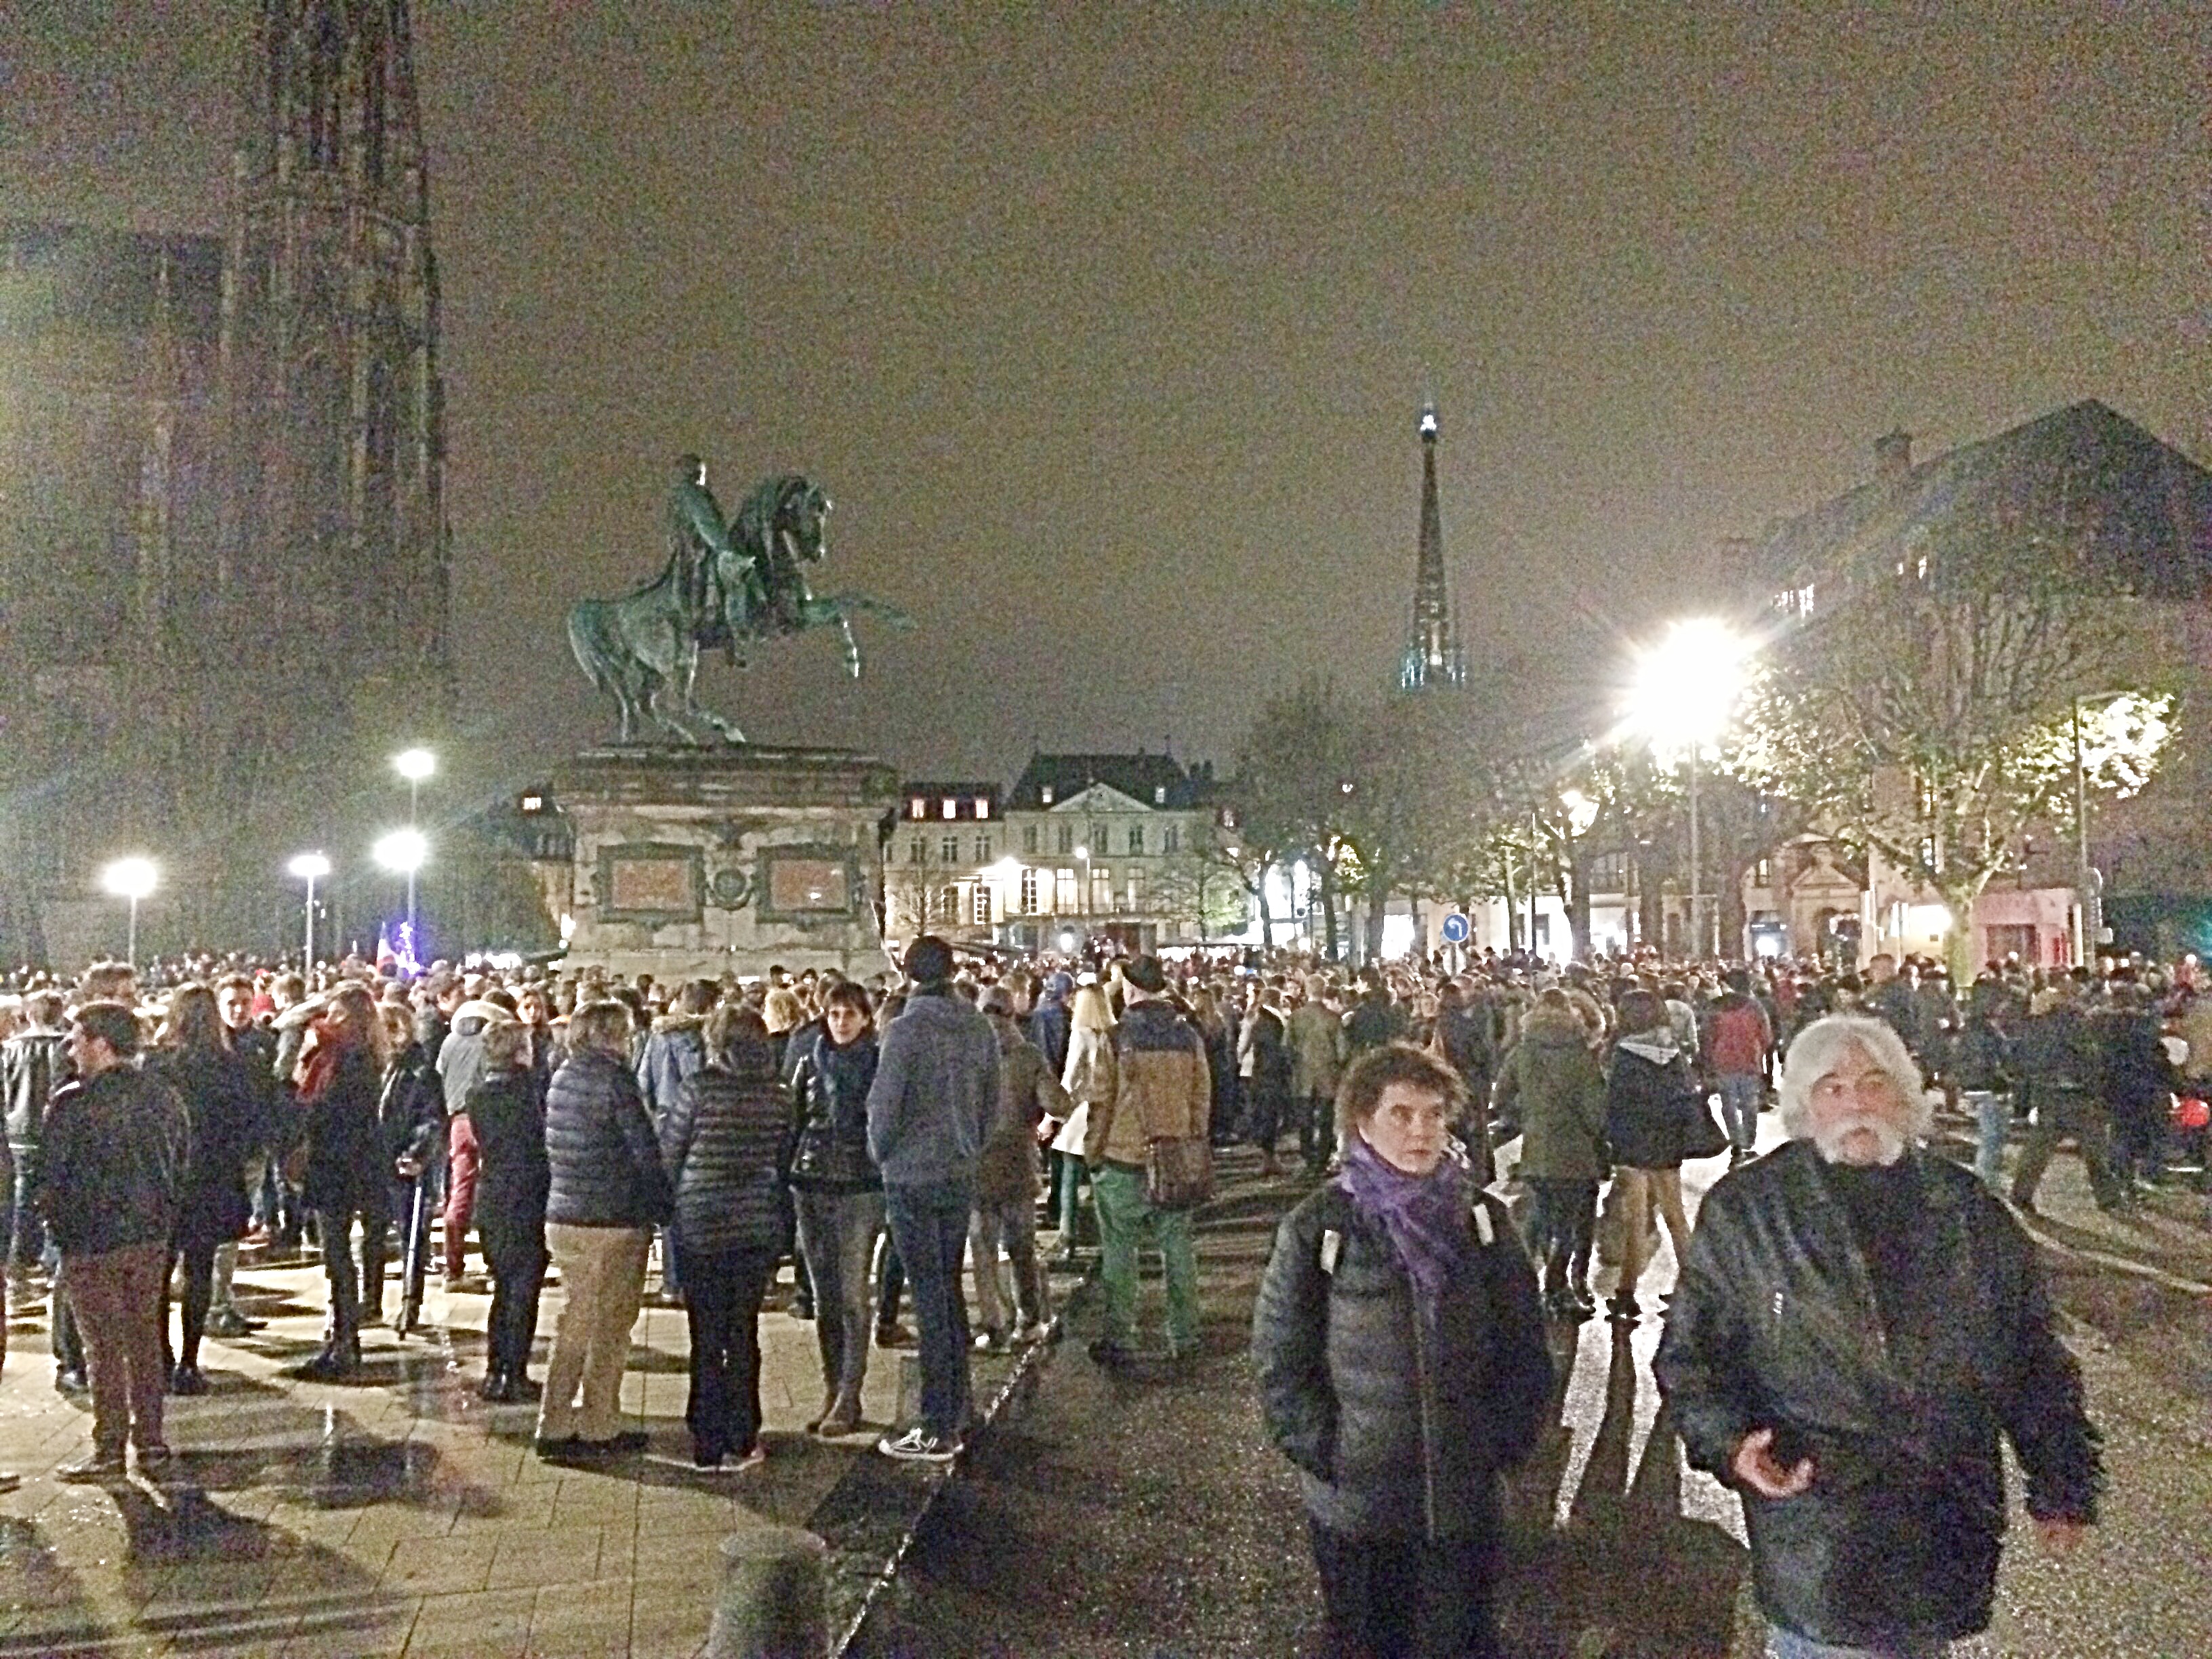 Hommage aux victimes des attentats ce soir à Rouen : 5000 personnes devant l'hôtel de ville